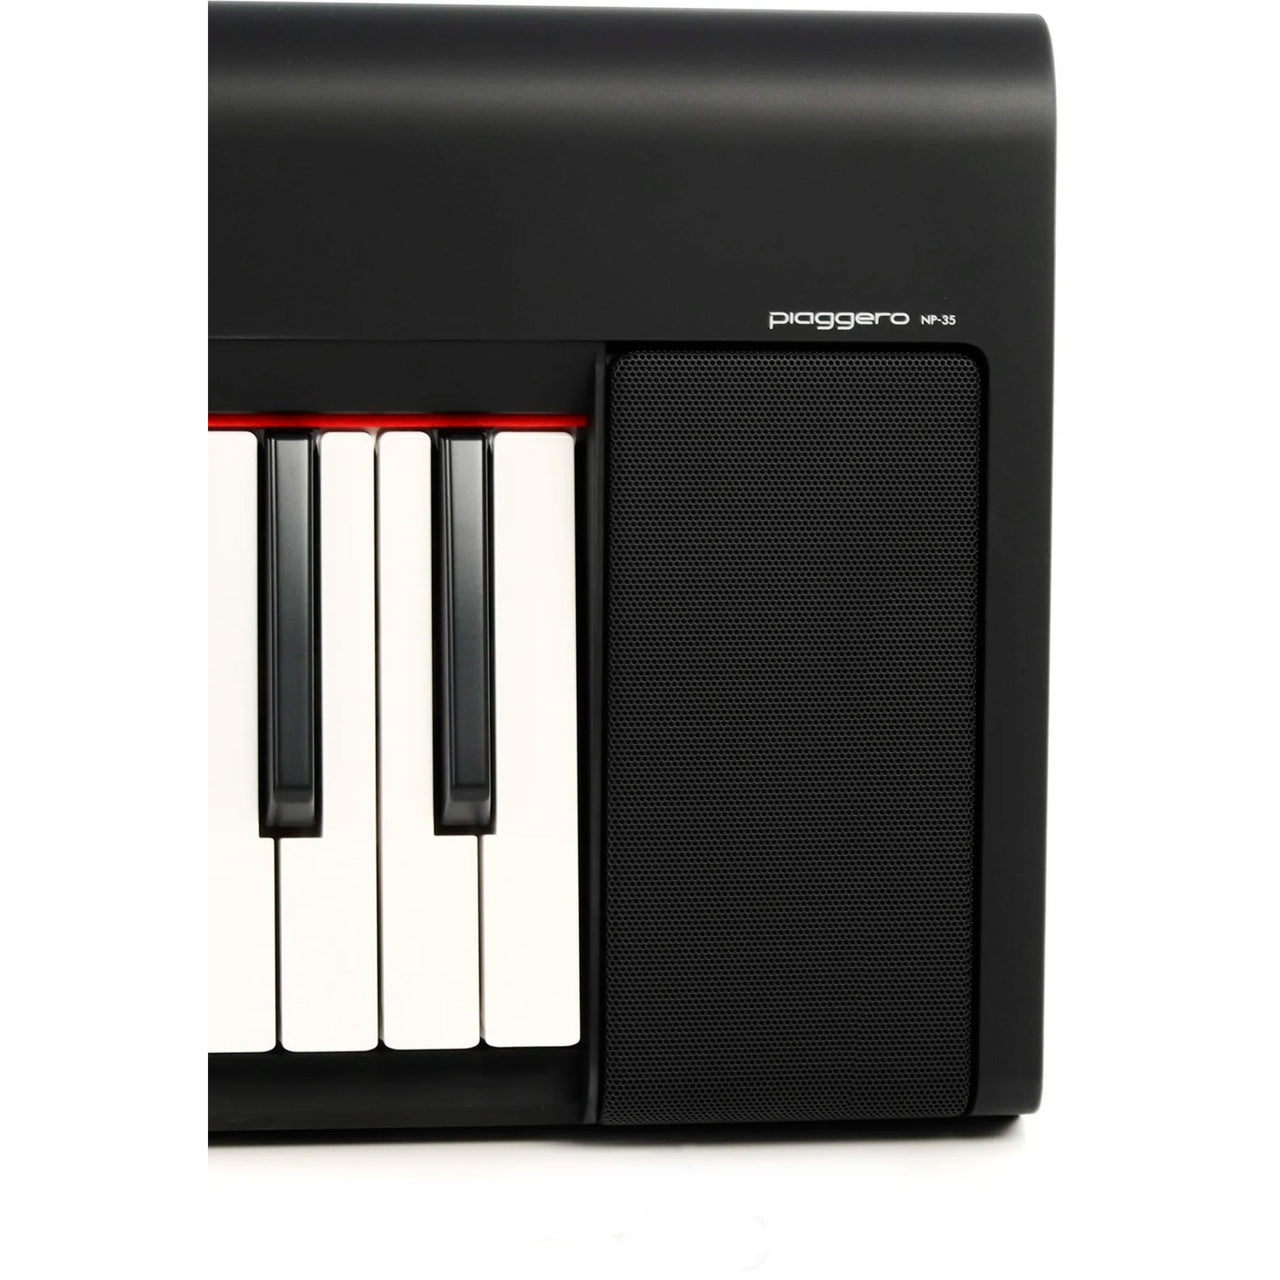 Piano Digital Yamaha Portatil C/adaptador Pa150, Np35bset